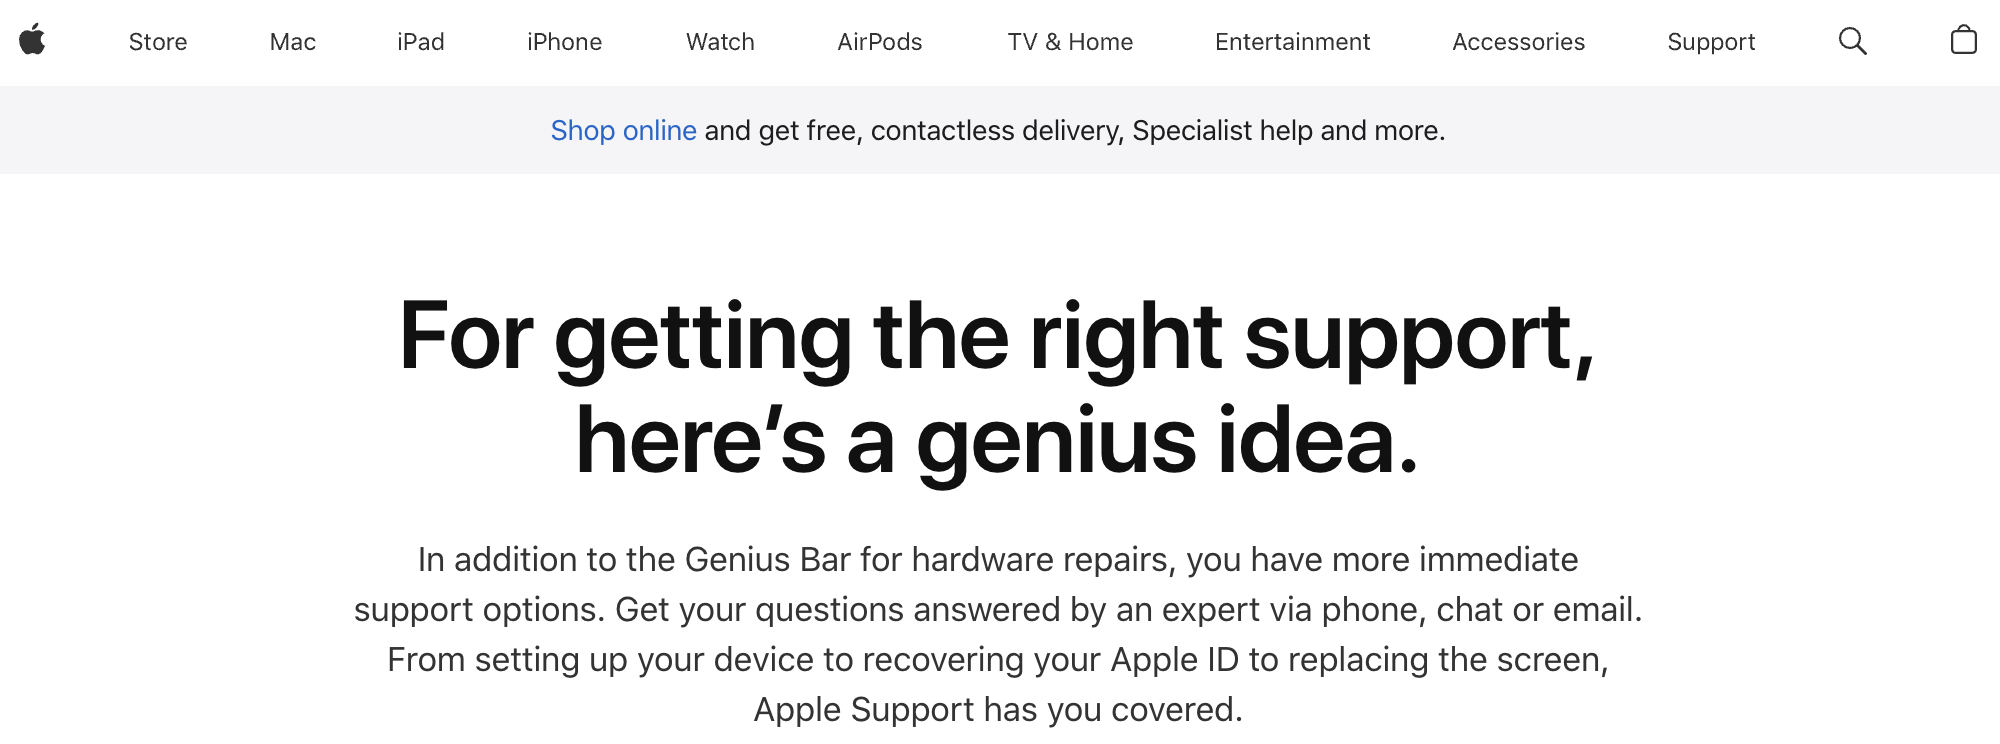 Apple's repair center called Genius bar